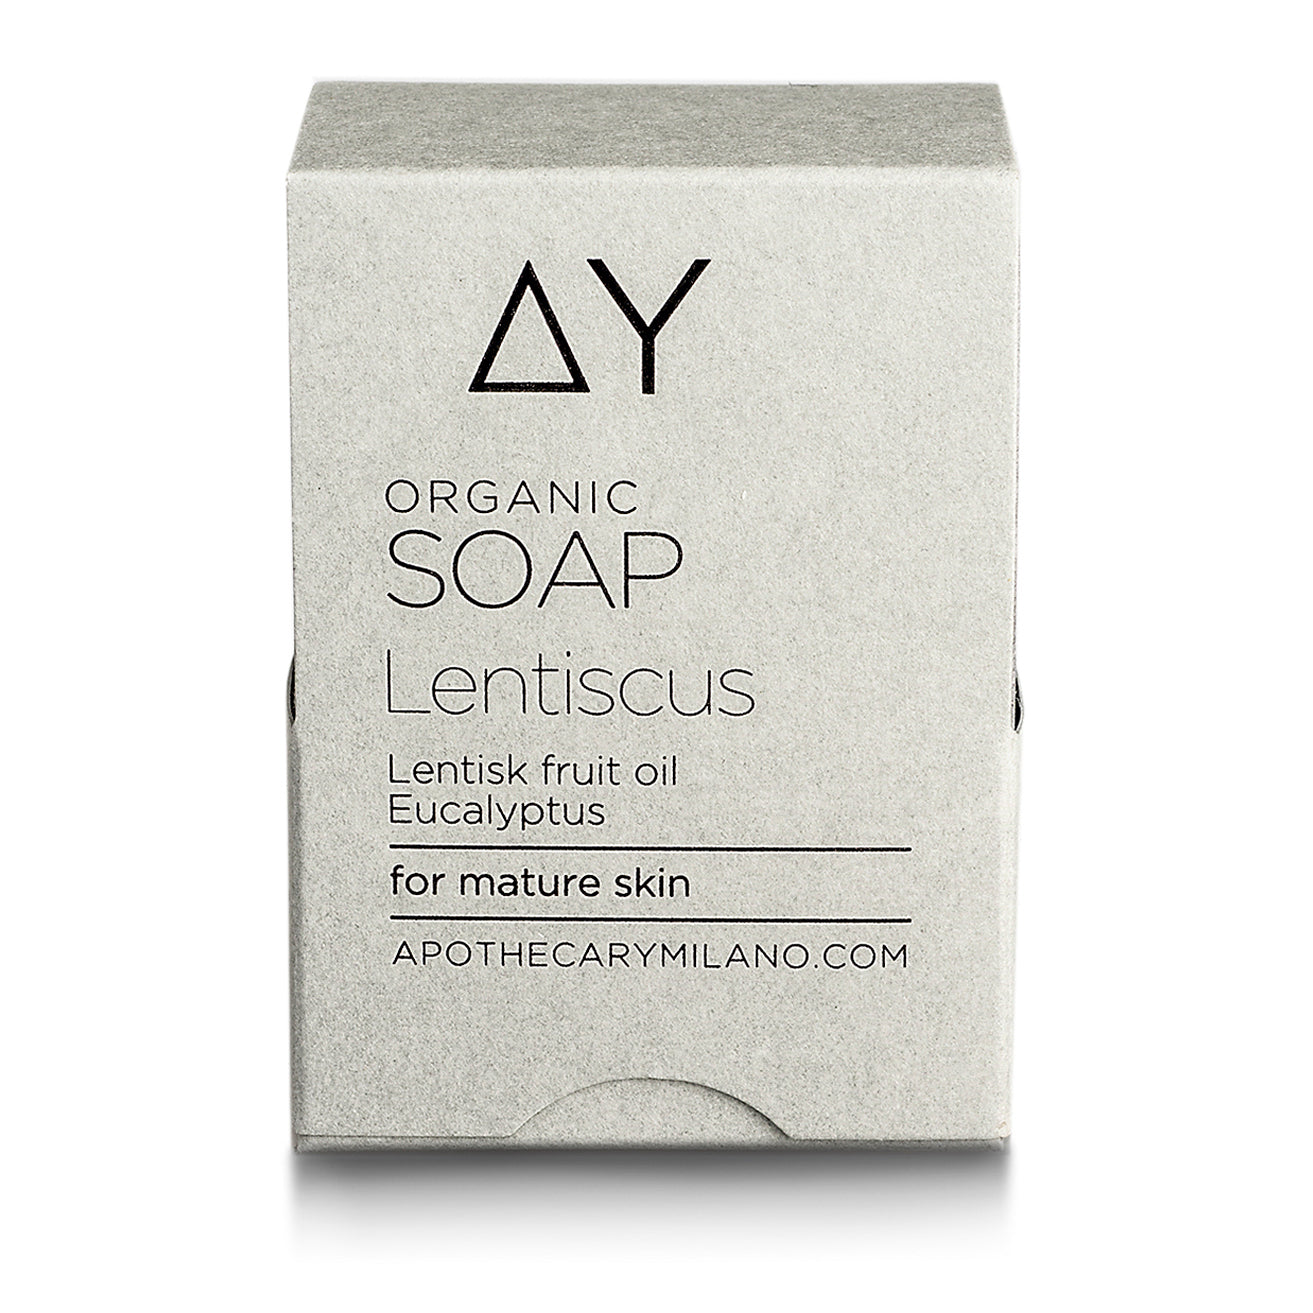 Lentiscus Organic Soap